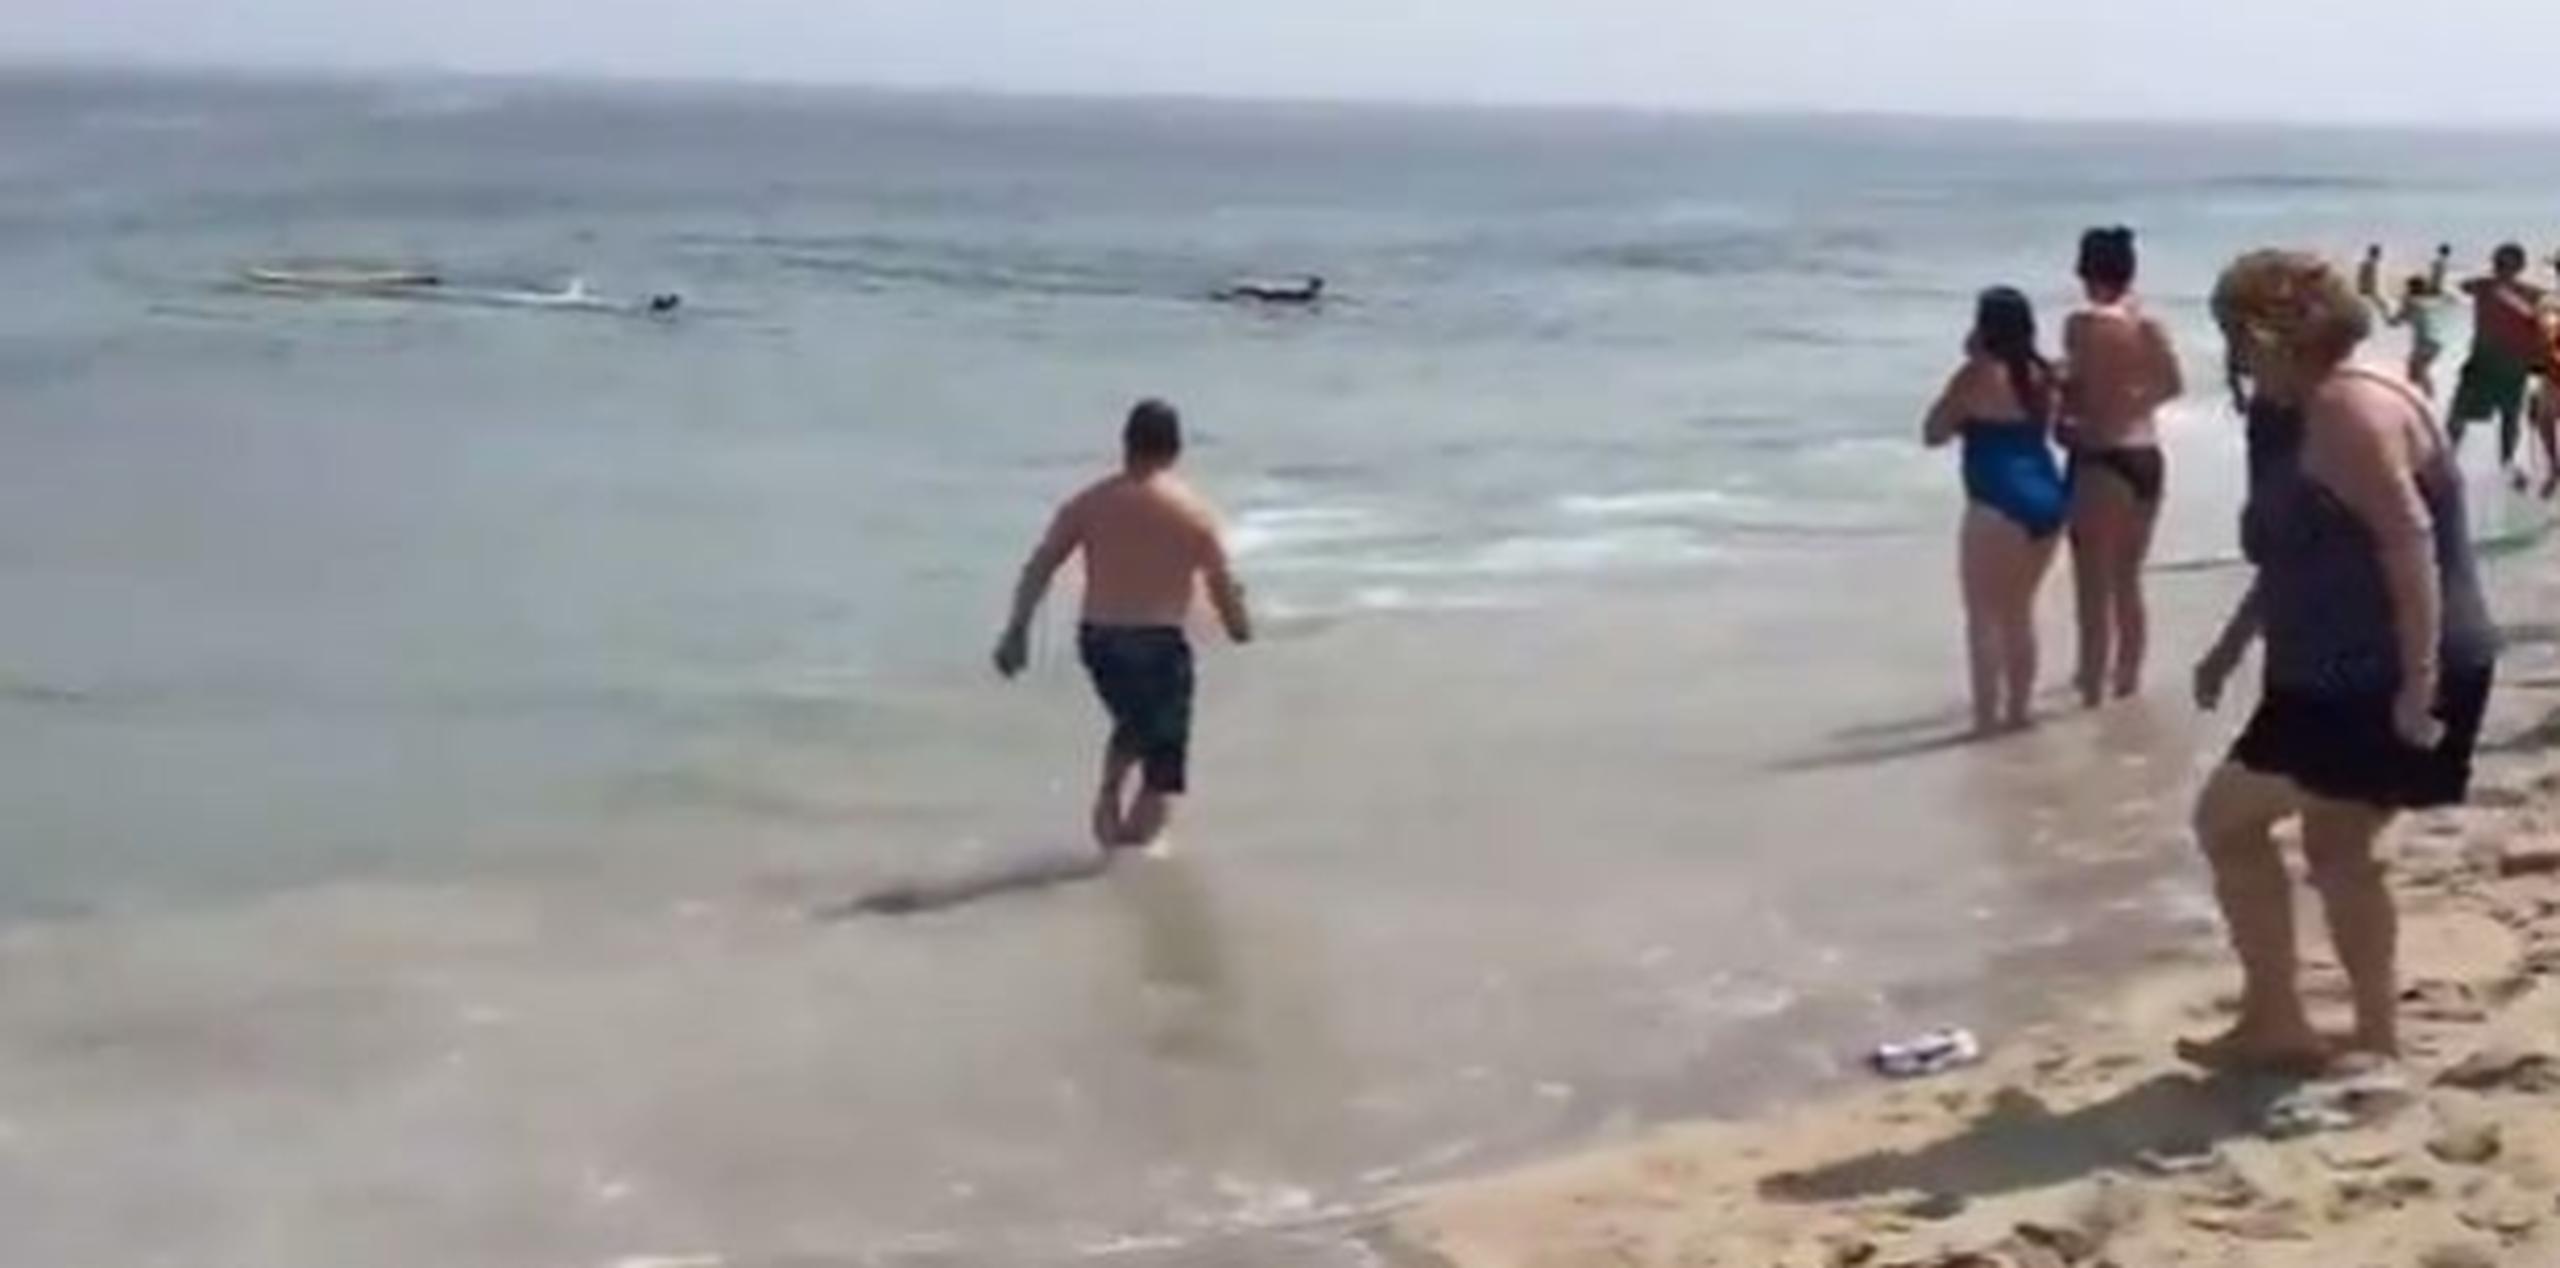 Los nadadores y surfistas se escandalizaron al ver la riña entre los dos animales. (Foto: captura de YouTube)